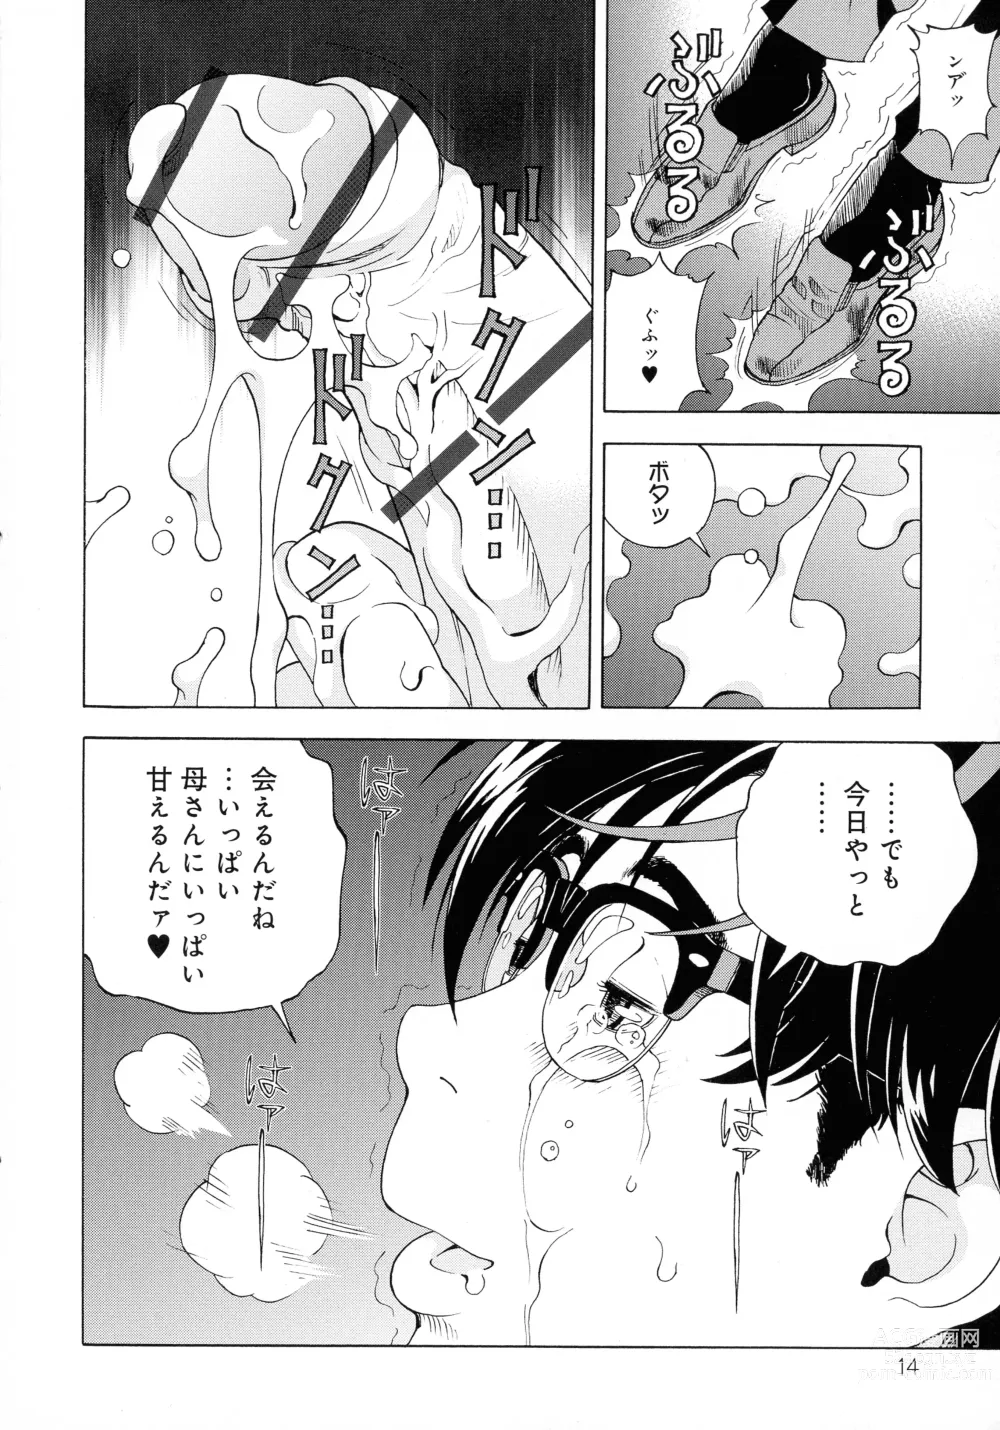 Page 14 of manga Bokinbako 2